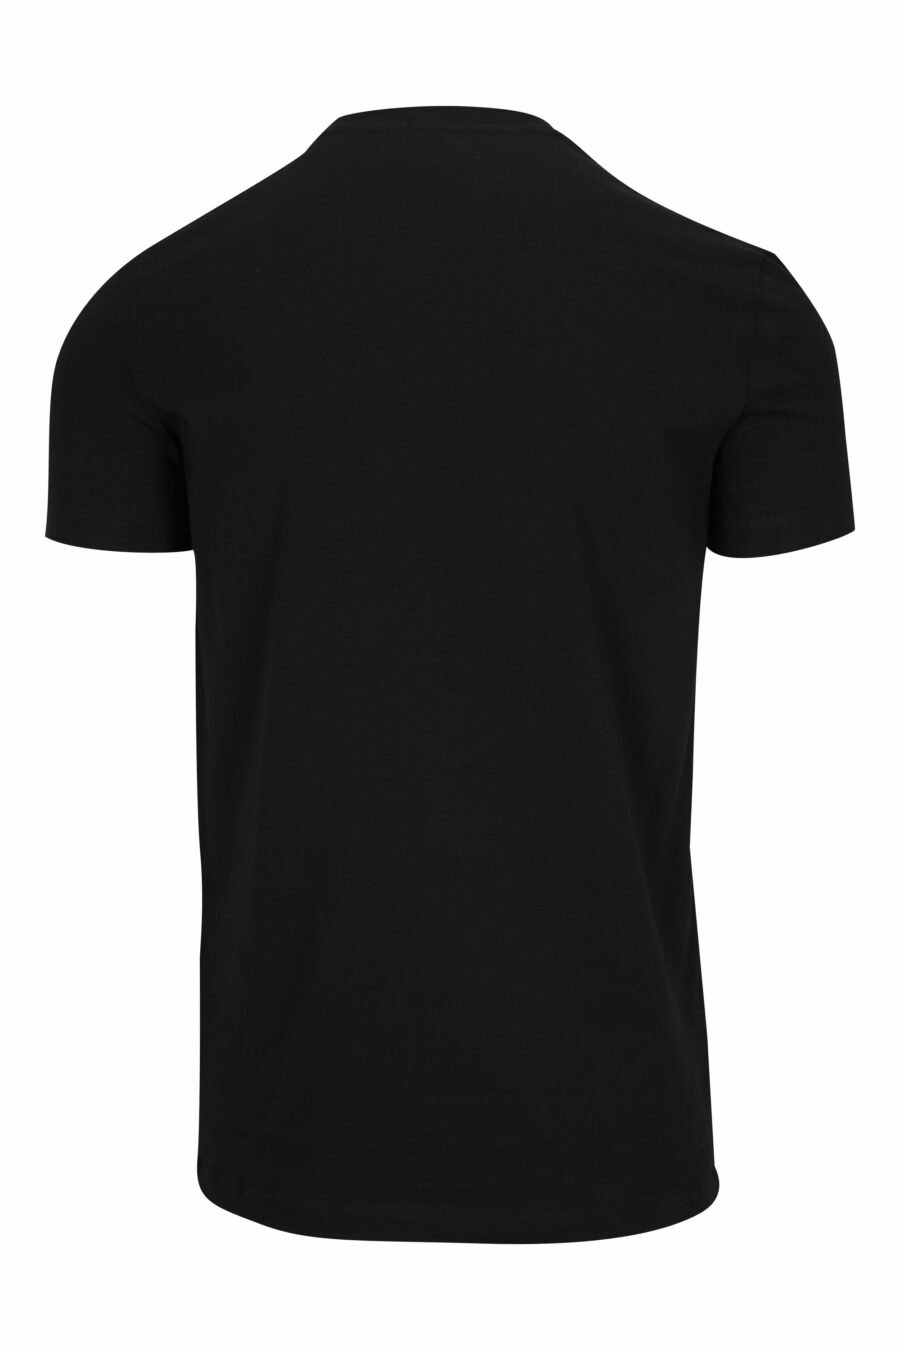 Schwarzes T-shirt mit weißer Unterwäsche minilogue - 8032674811509 1